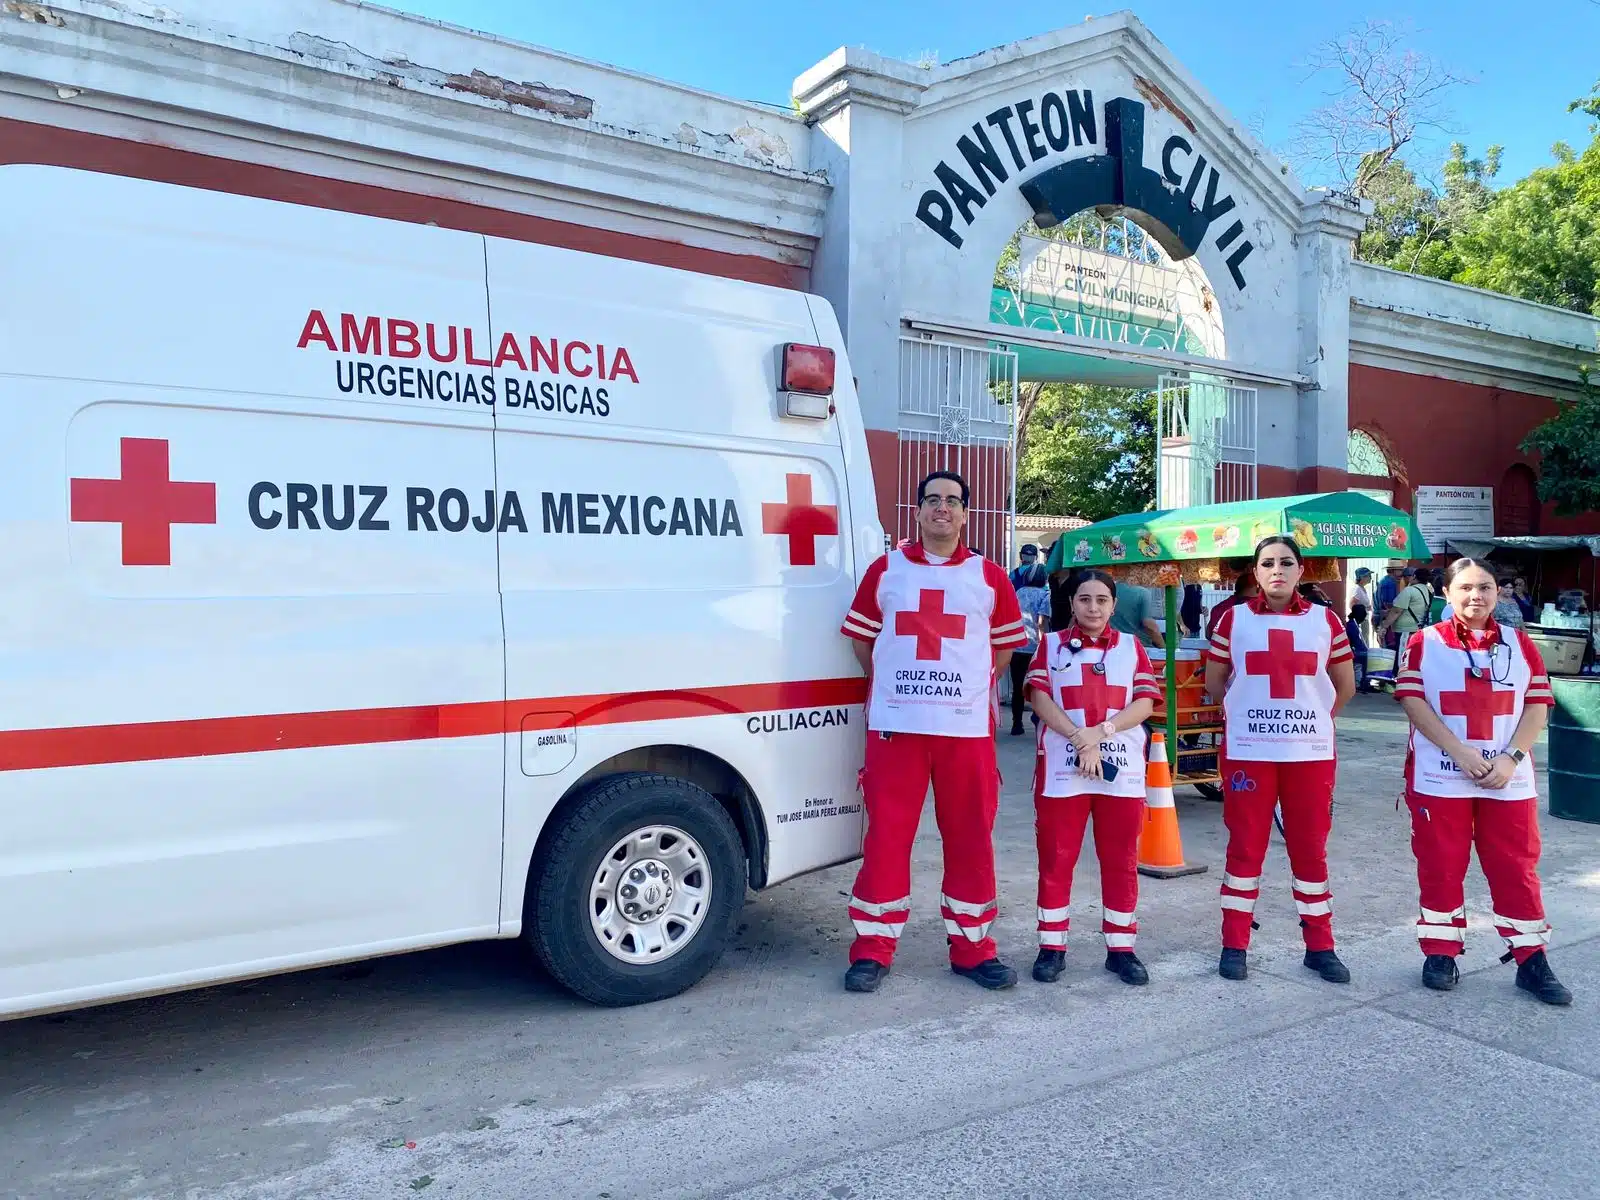 Operativo de la Cruz Roja Mexicana para el Día de Muertos